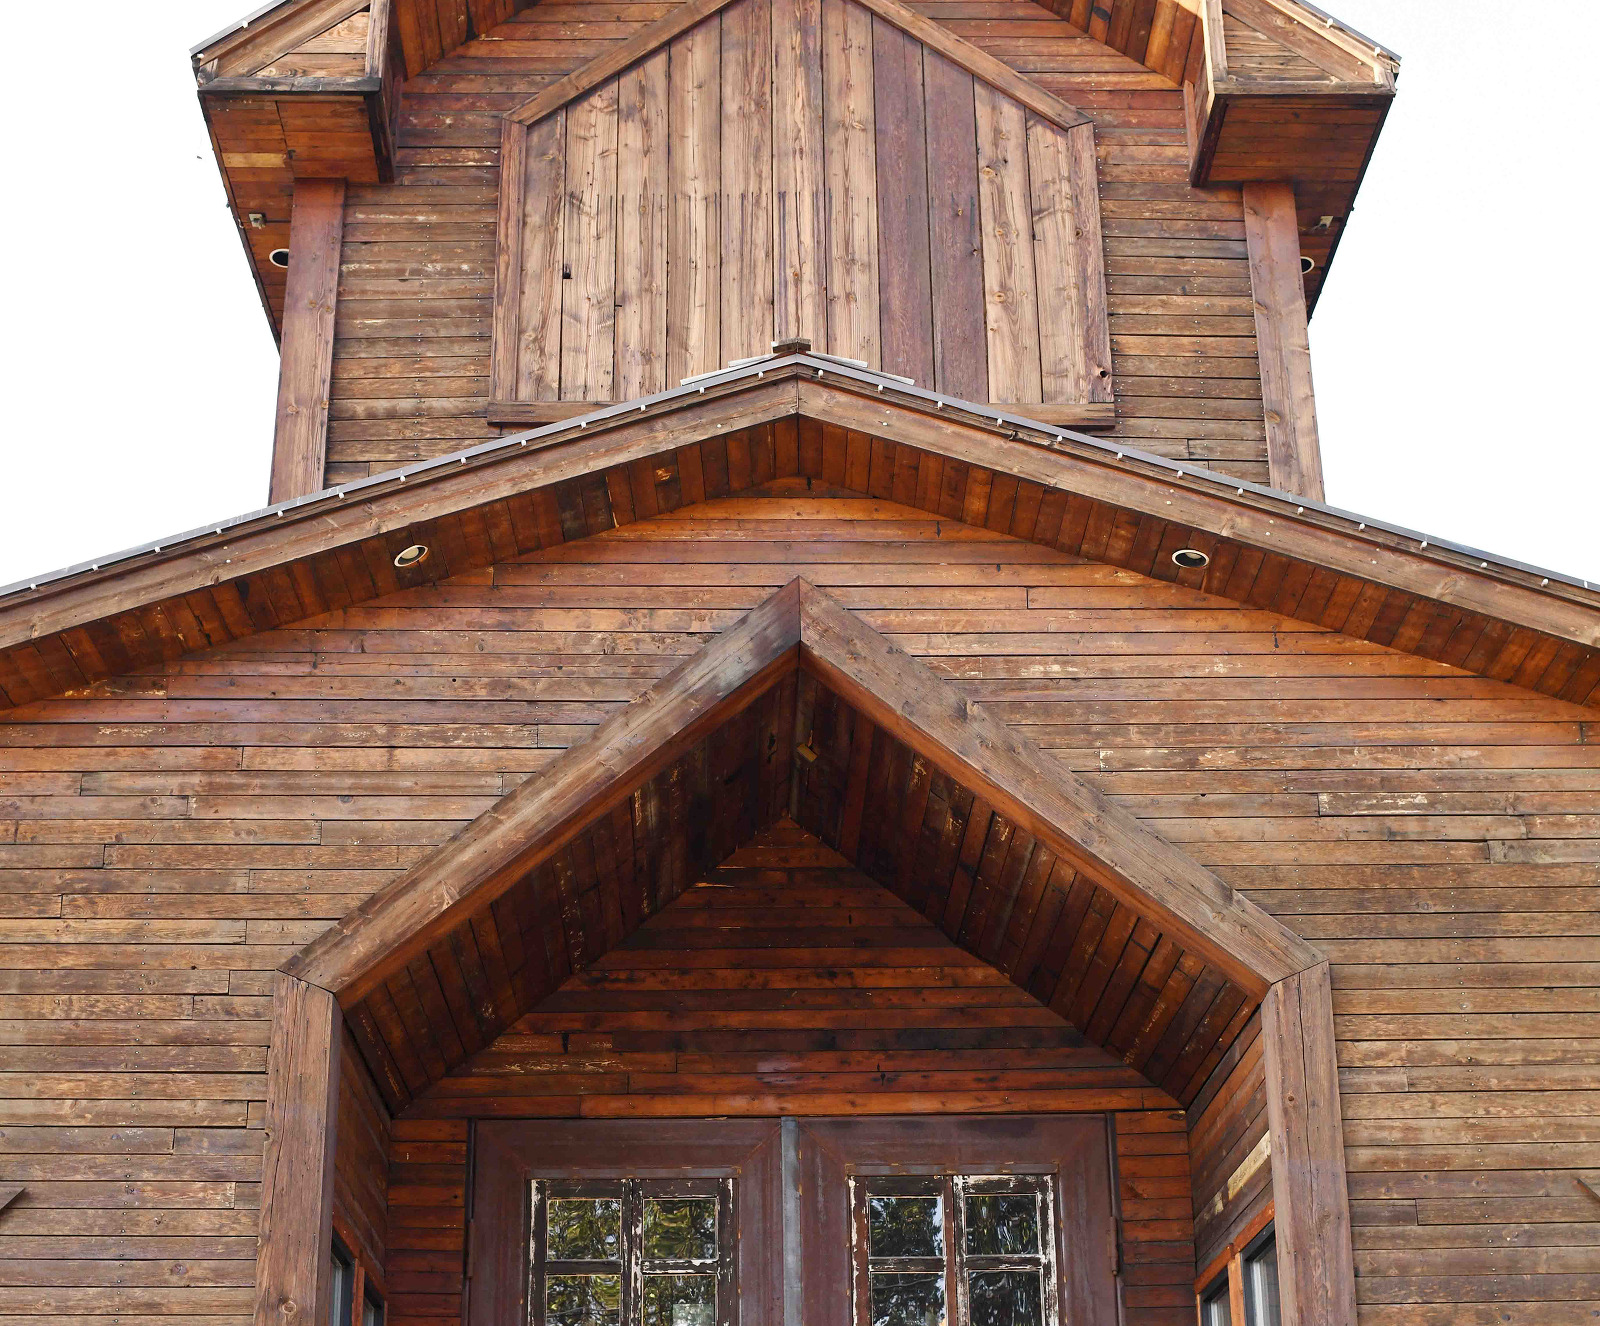 A wooden church serves as a venue.